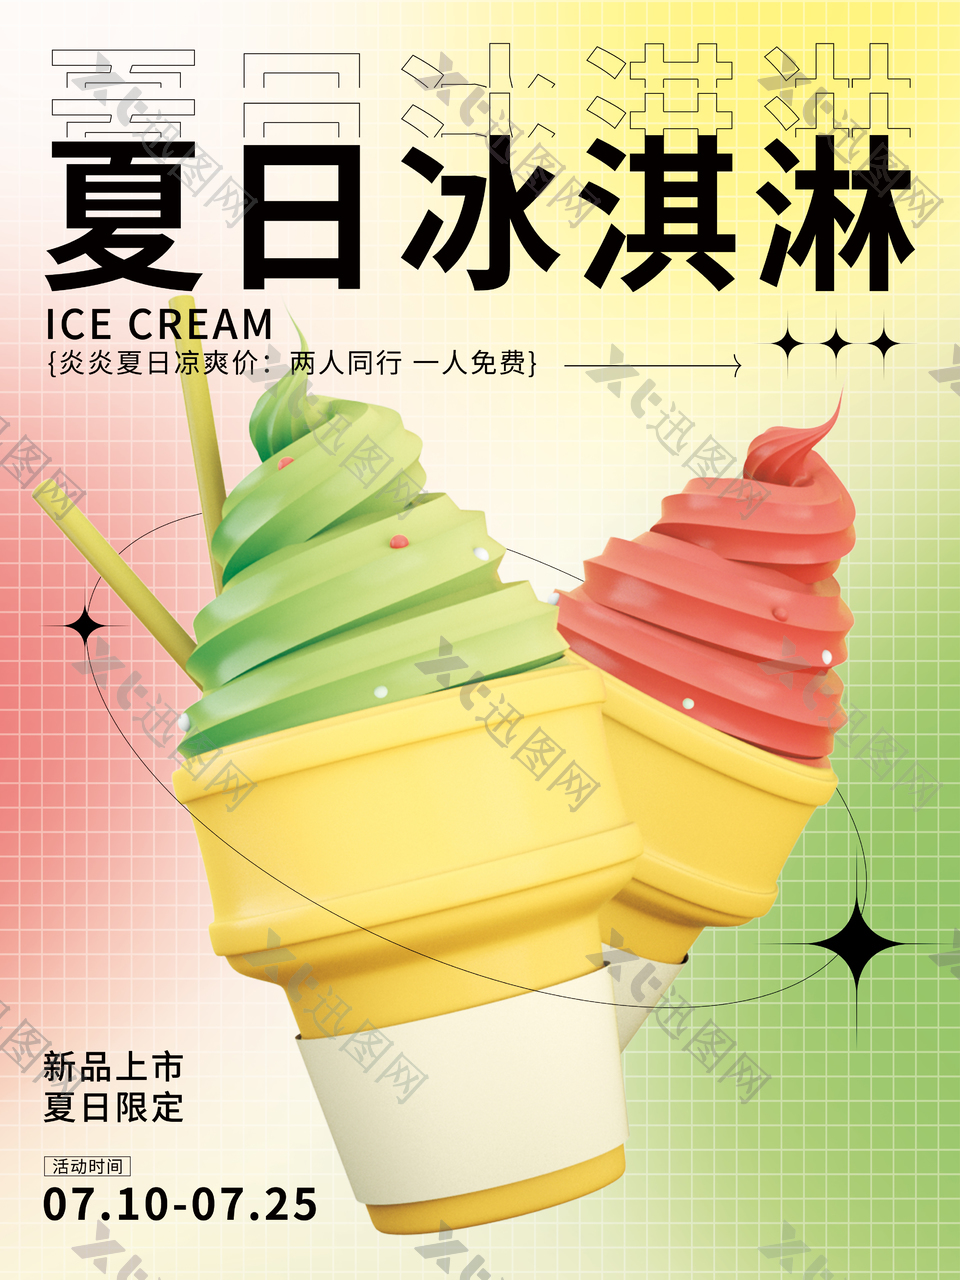 夏日冰淇淋美食图片